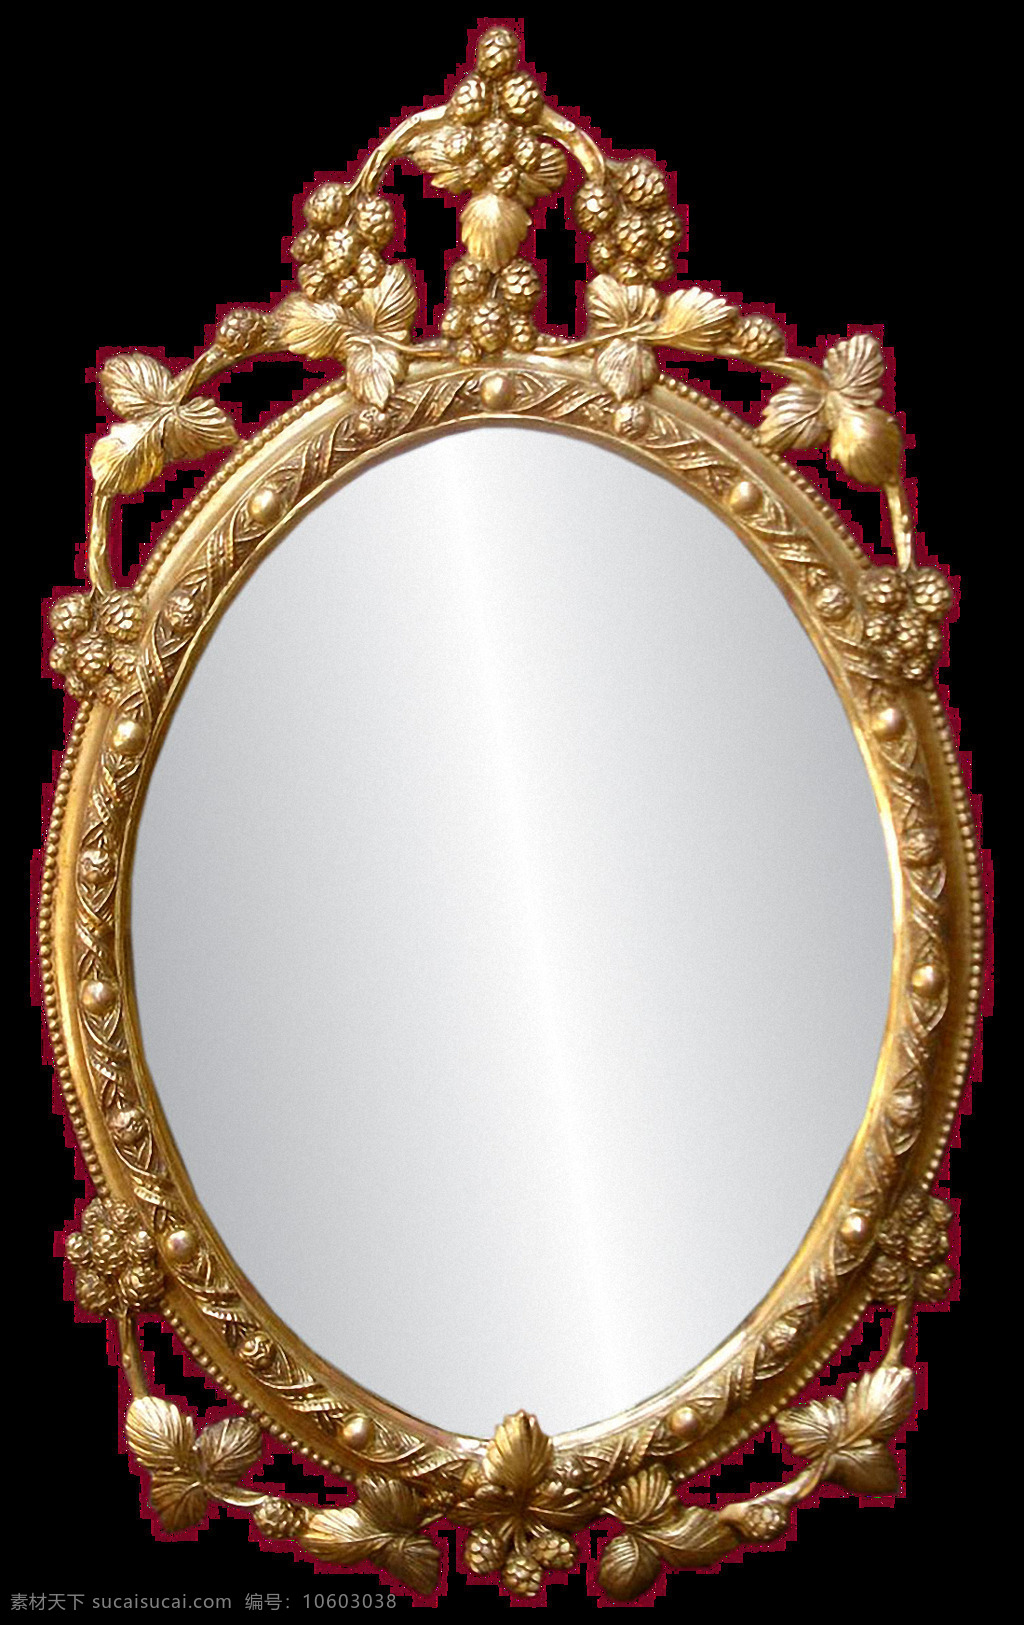 椭圆镜子浴室镜拉伸折叠免打孔酒店家用装修材料双面化妆镜壁挂式-阿里巴巴